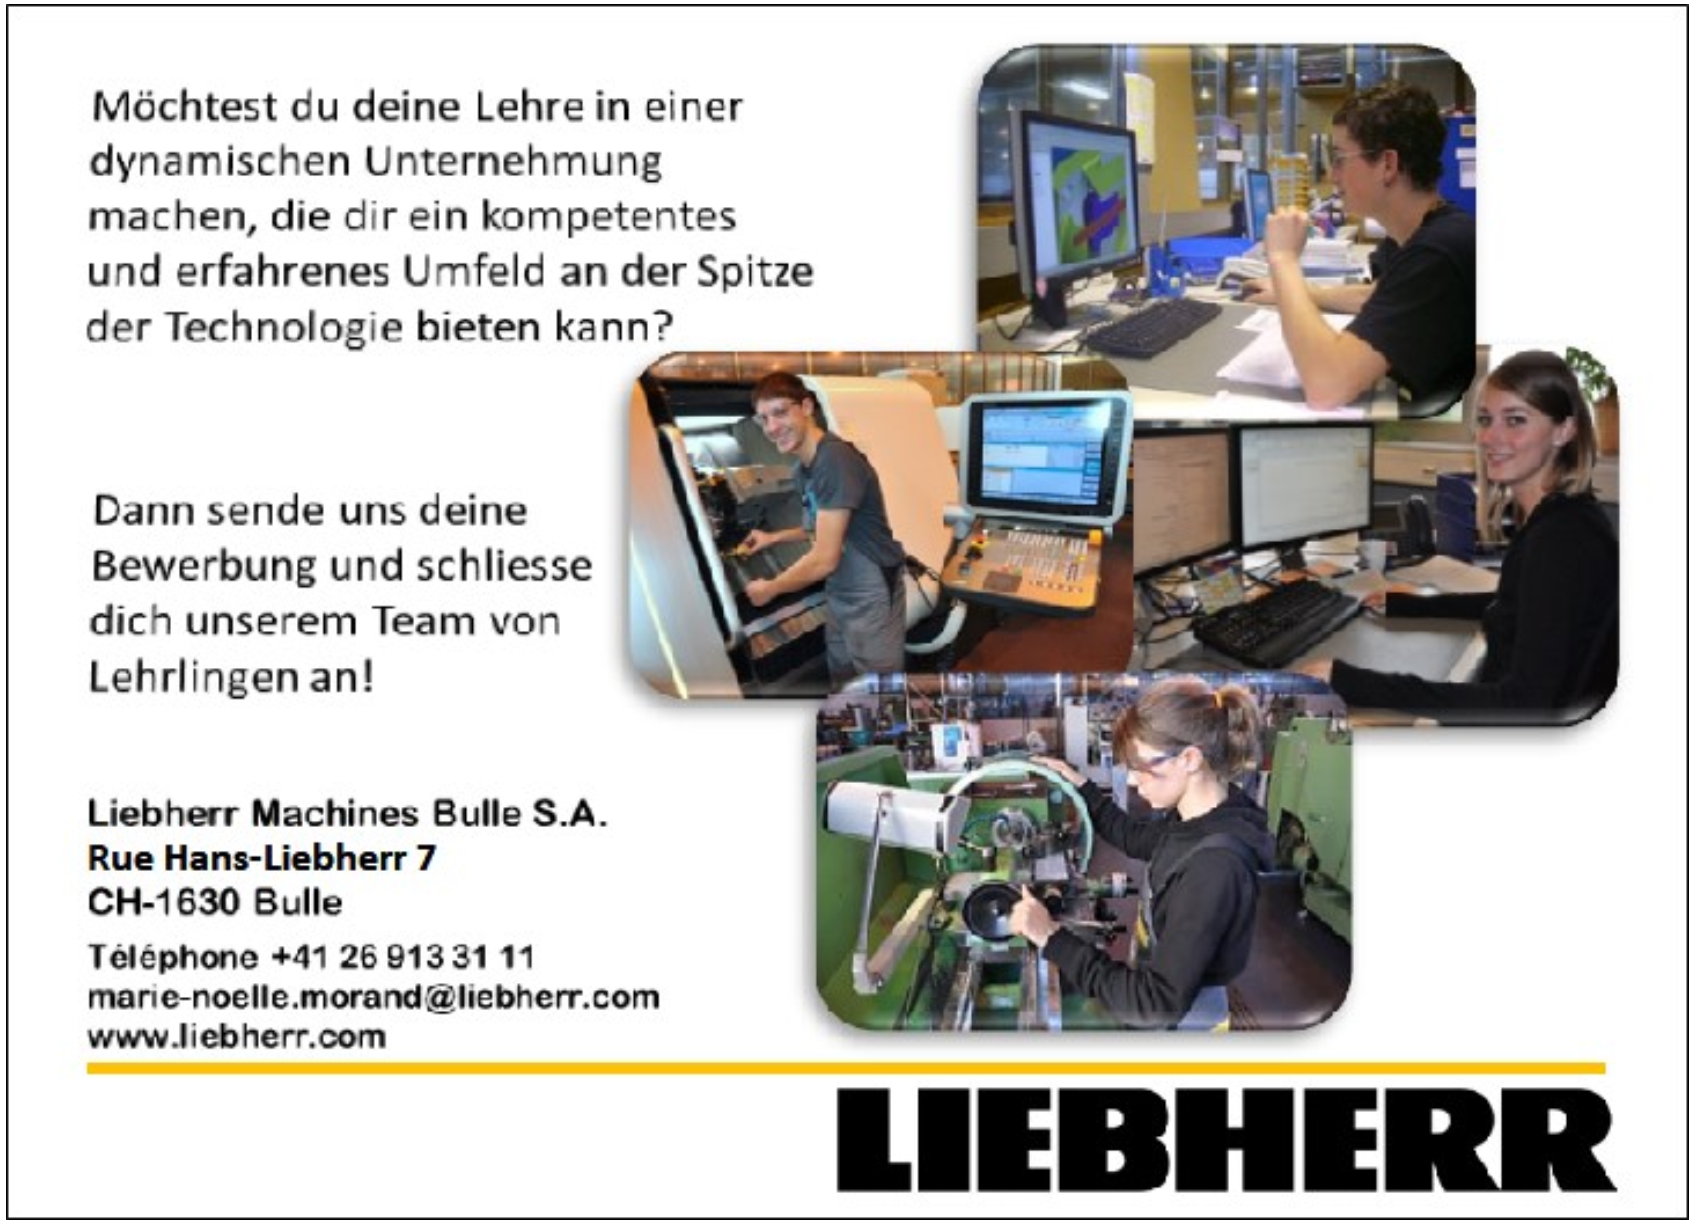 Liebherr Machines Bulle S.A.